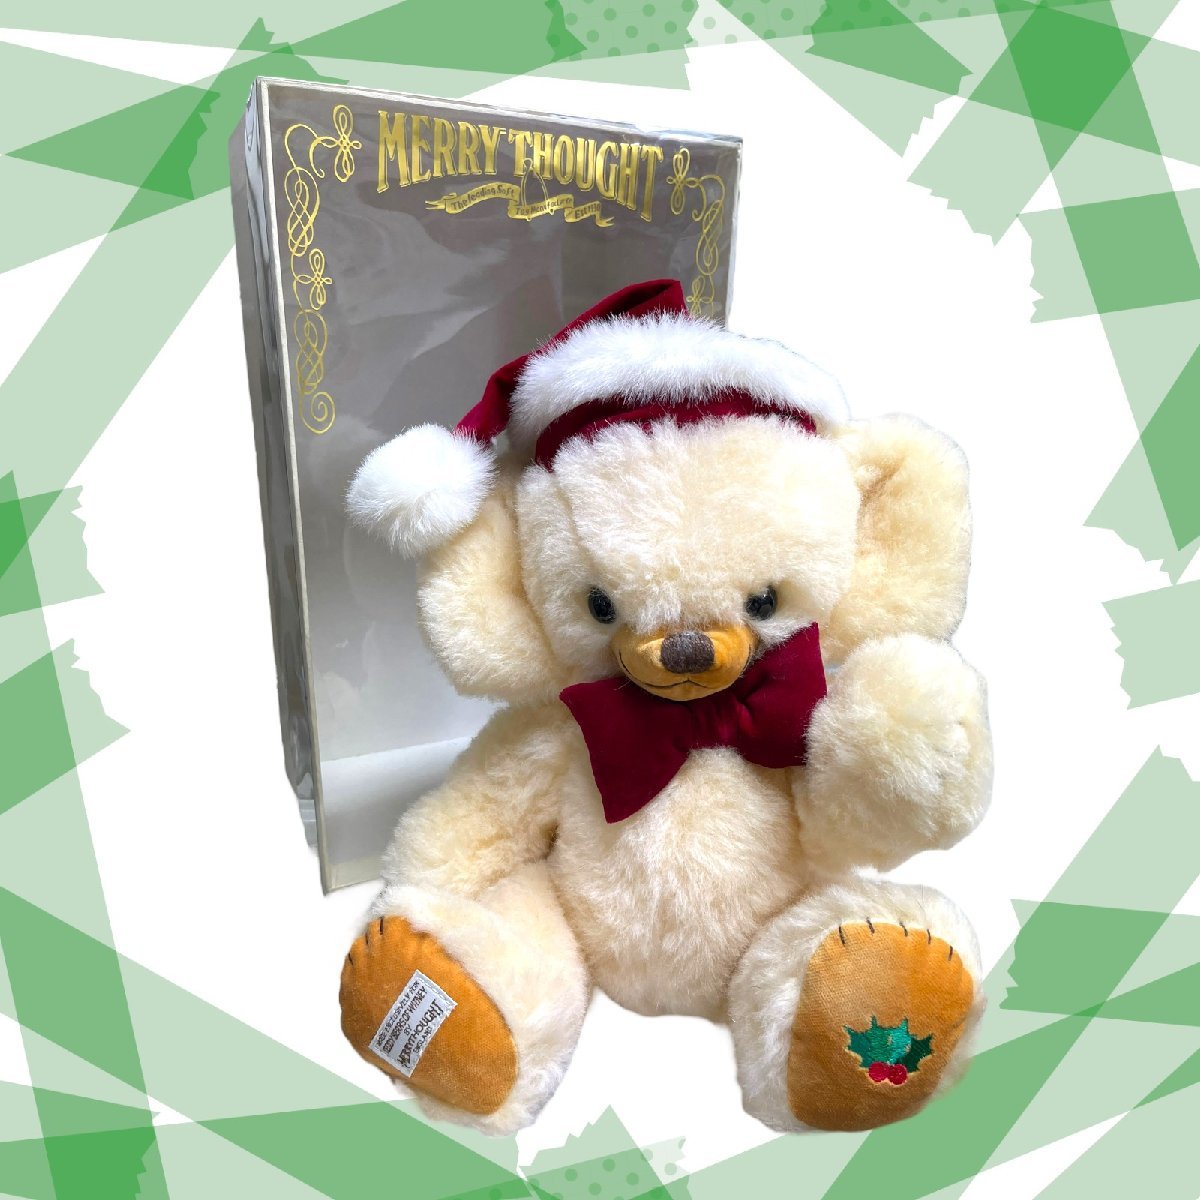 【・保管品】 メリーソート チーキー Cheeky White Christmas Teddy Bears of Witney 限定 〈U.K〉 ぬいぐるみ テディベア W49745RA